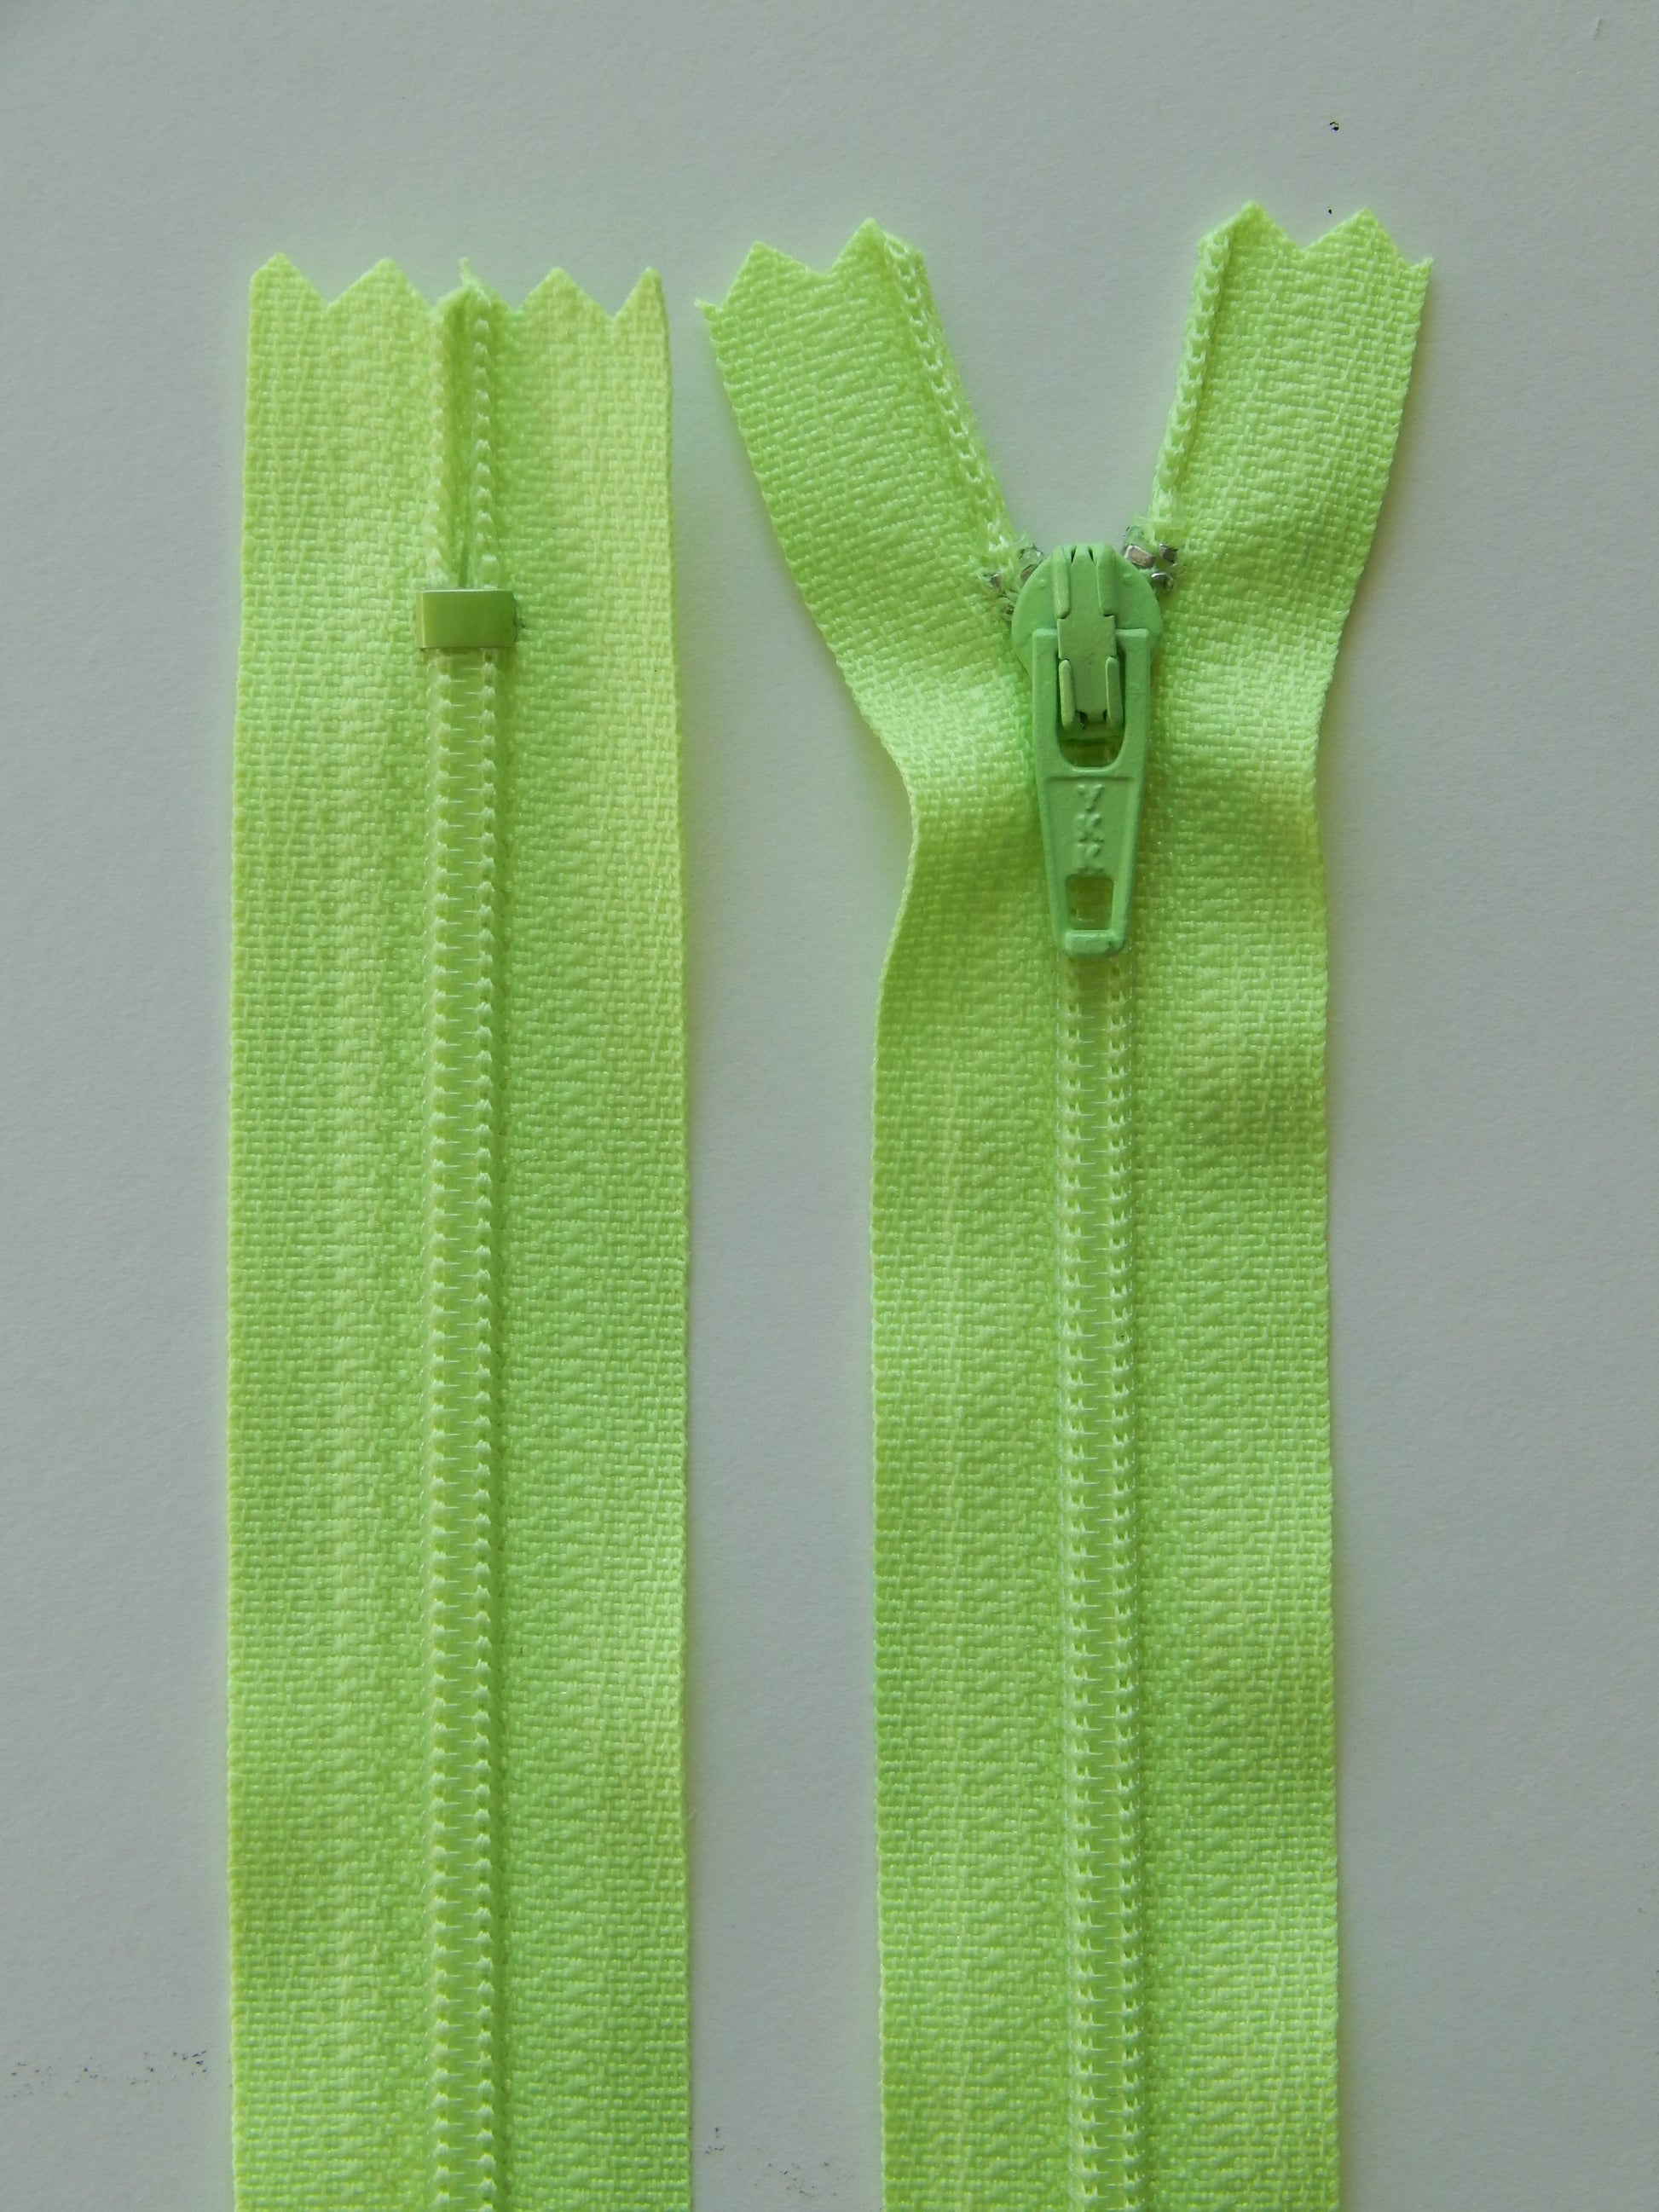 highlighter green plastic nonseparating skirt zipper